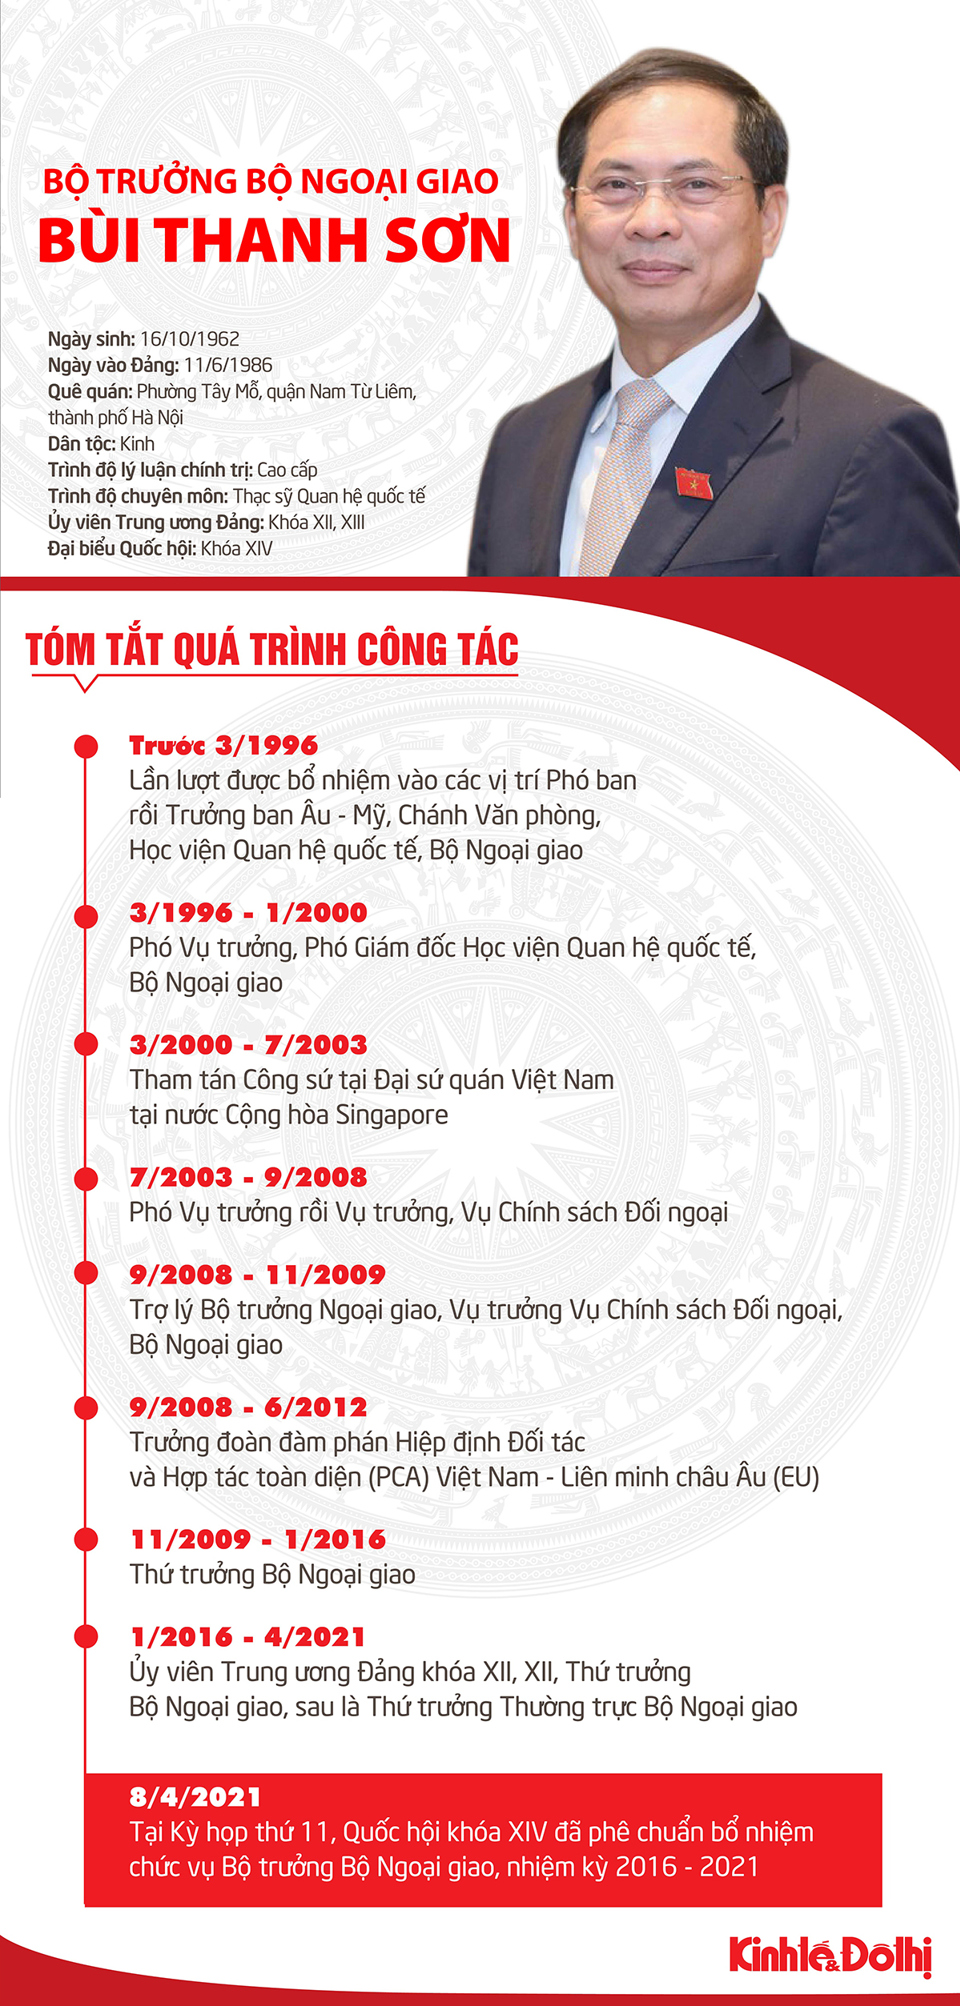 [Infographic] Tóm tắt quá trình công tác của tân Bộ trưởng Bộ Ngoại giao Bùi Thanh Sơn - Ảnh 1